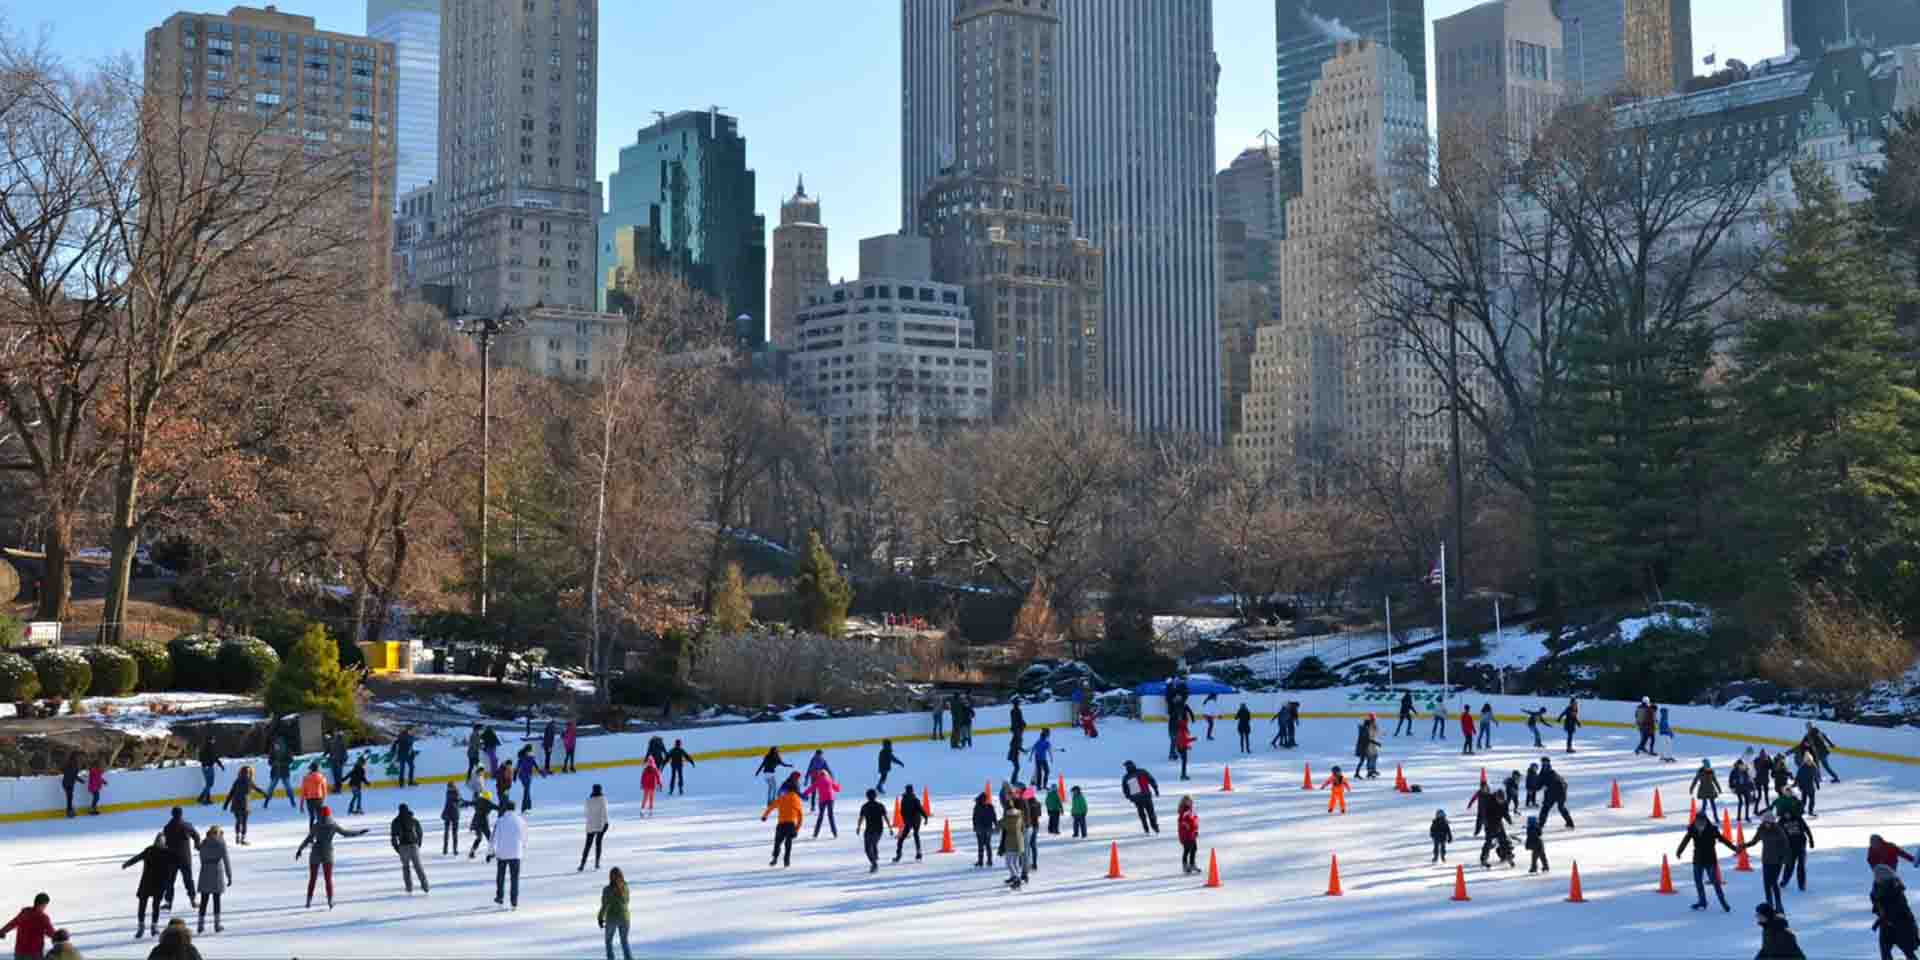 Pessoas patinando no gelo em parque em Nova York durante o inverno